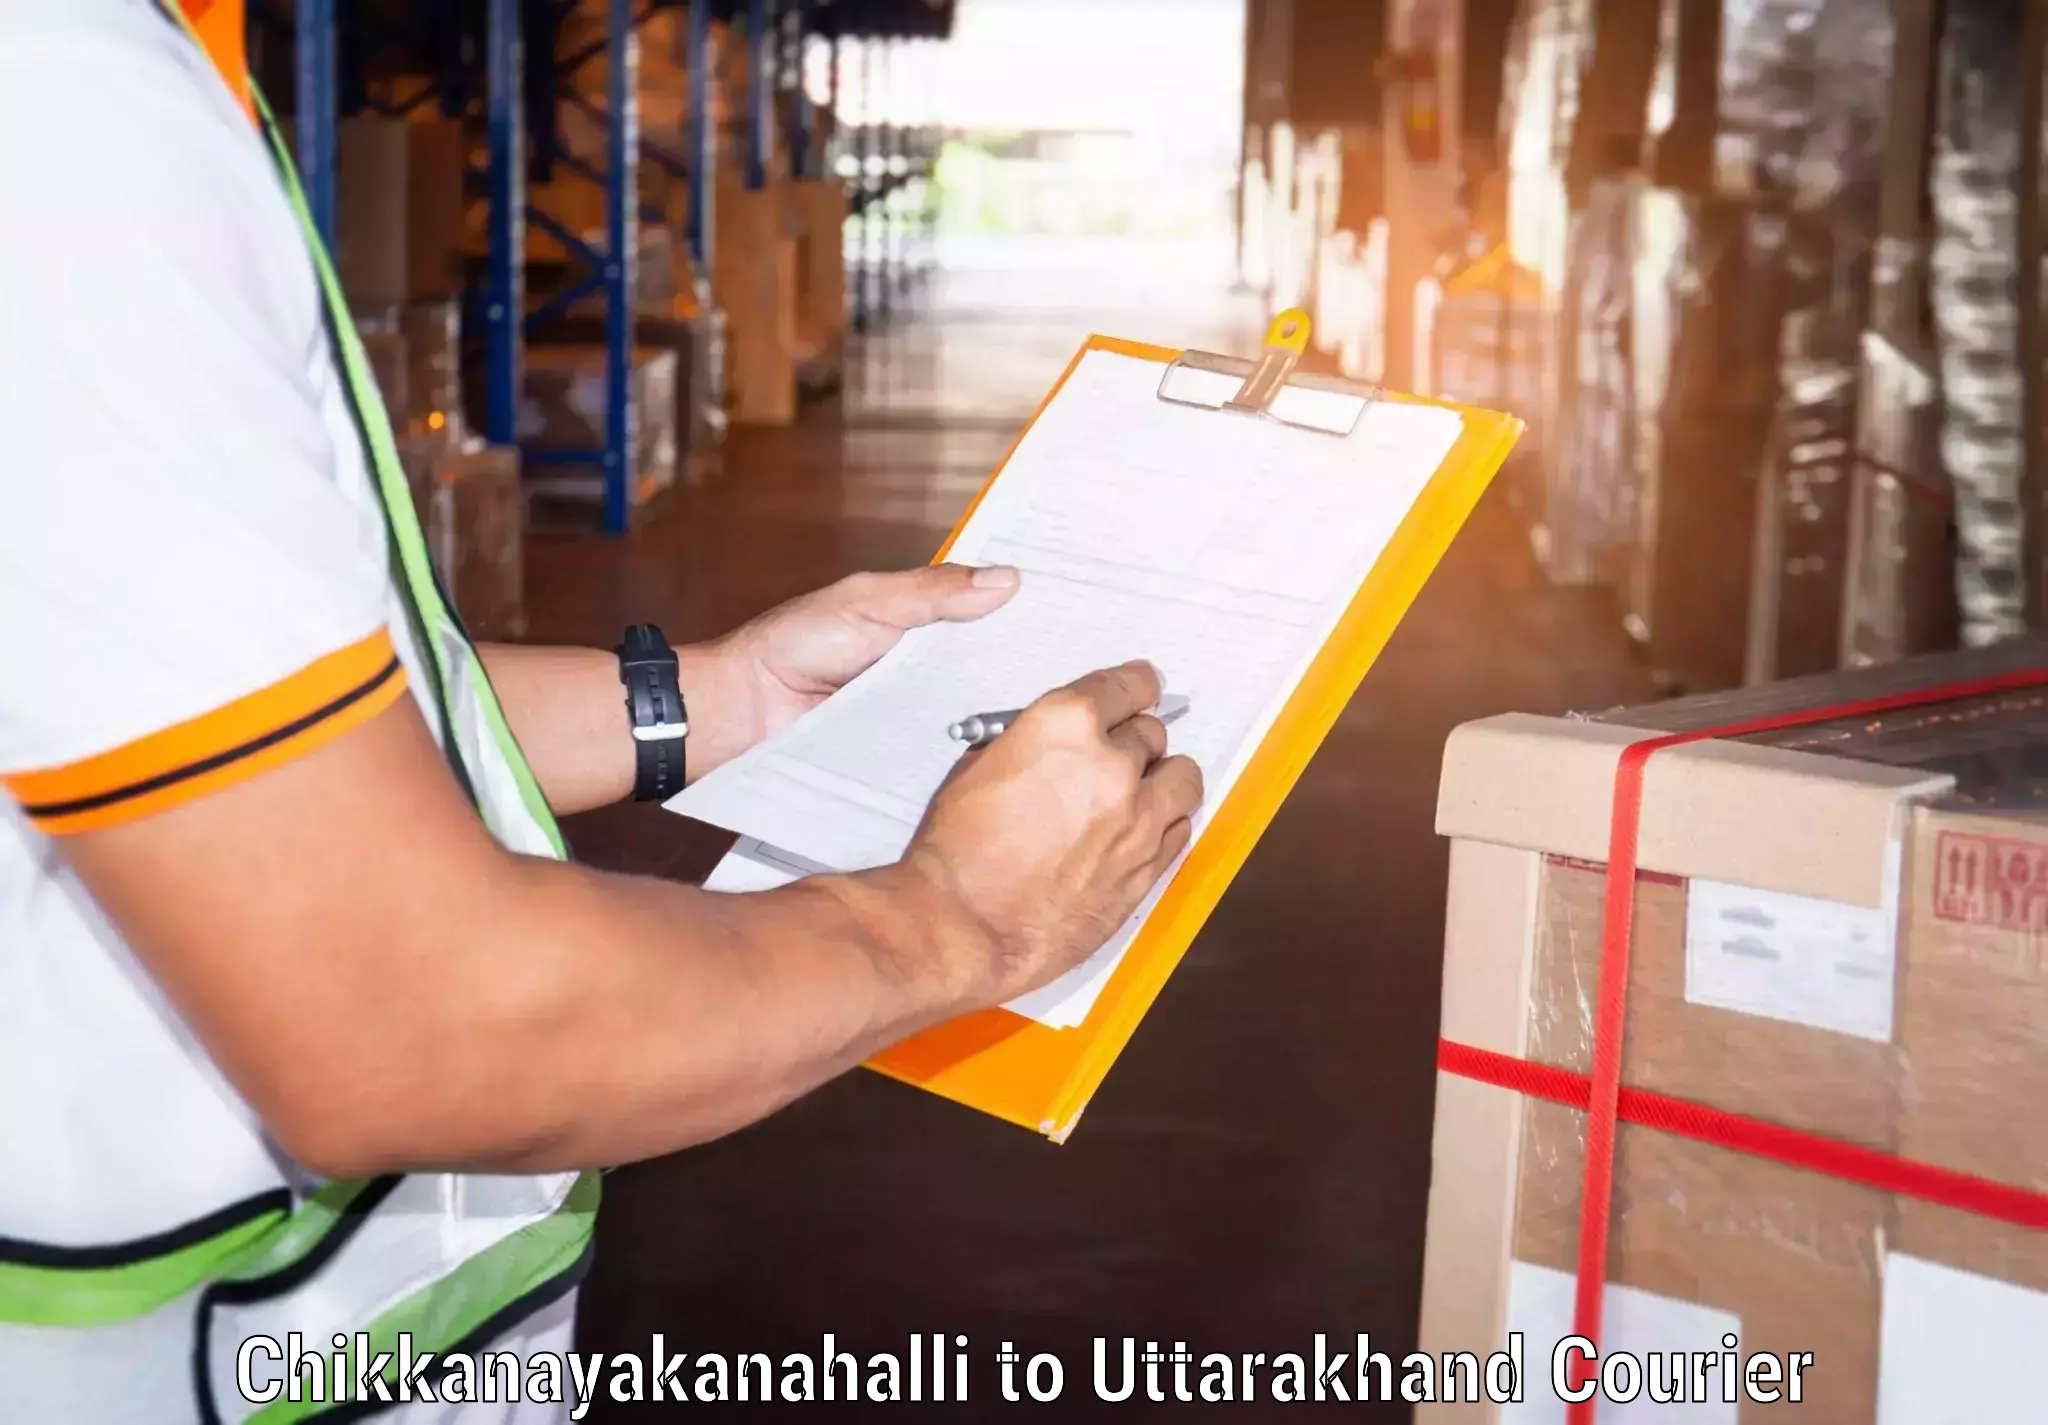 Business shipping needs Chikkanayakanahalli to Rishikesh